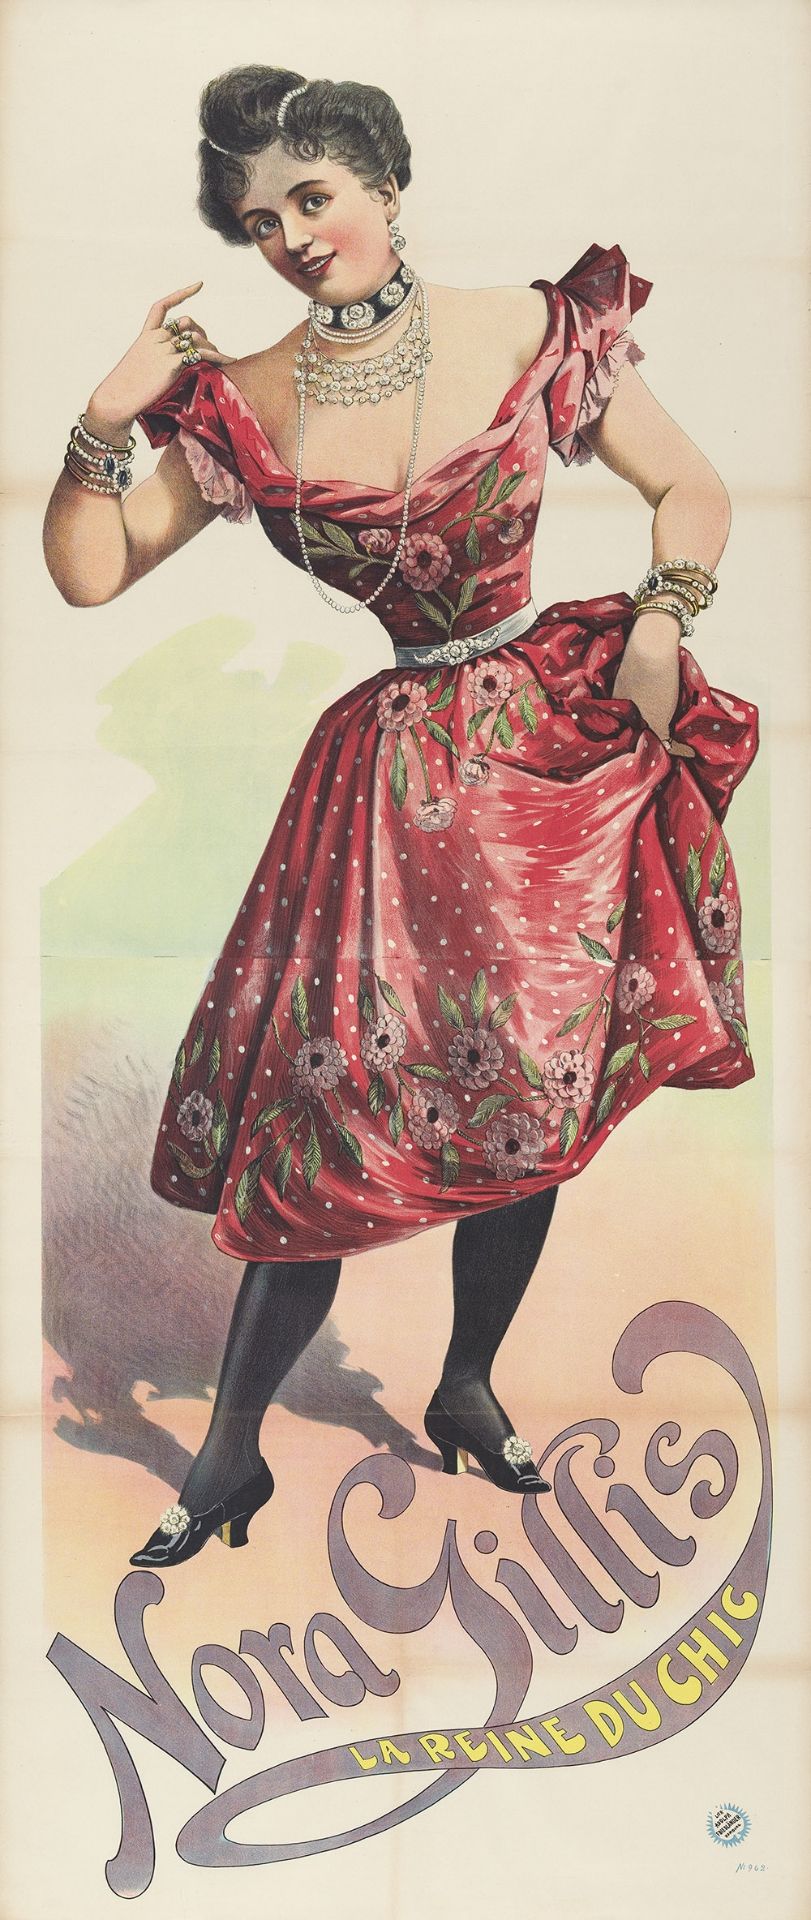 [Entertainment] Nora Gillis. La reine du chic Friedländer, Hamburg, 1891